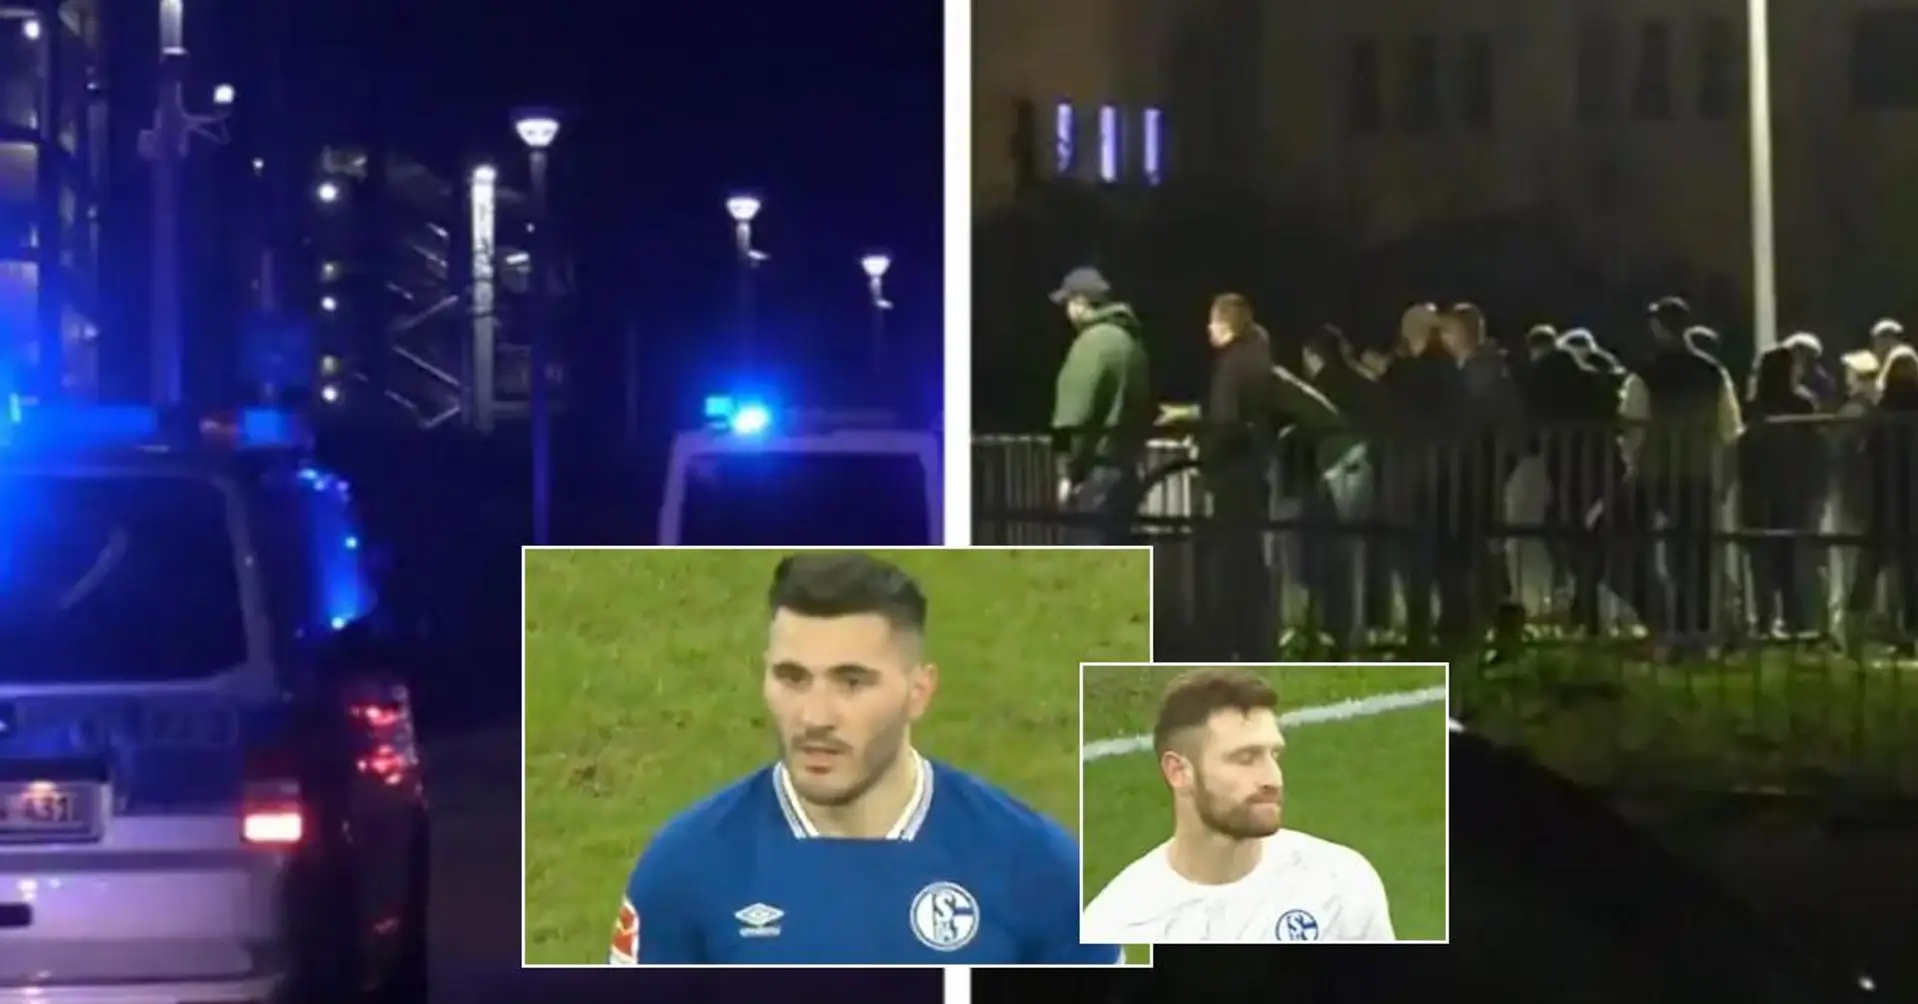 Follia in Germania: tifosi furiosi dello Schalke inseguono i giocatori per strada dopo la retrocessione